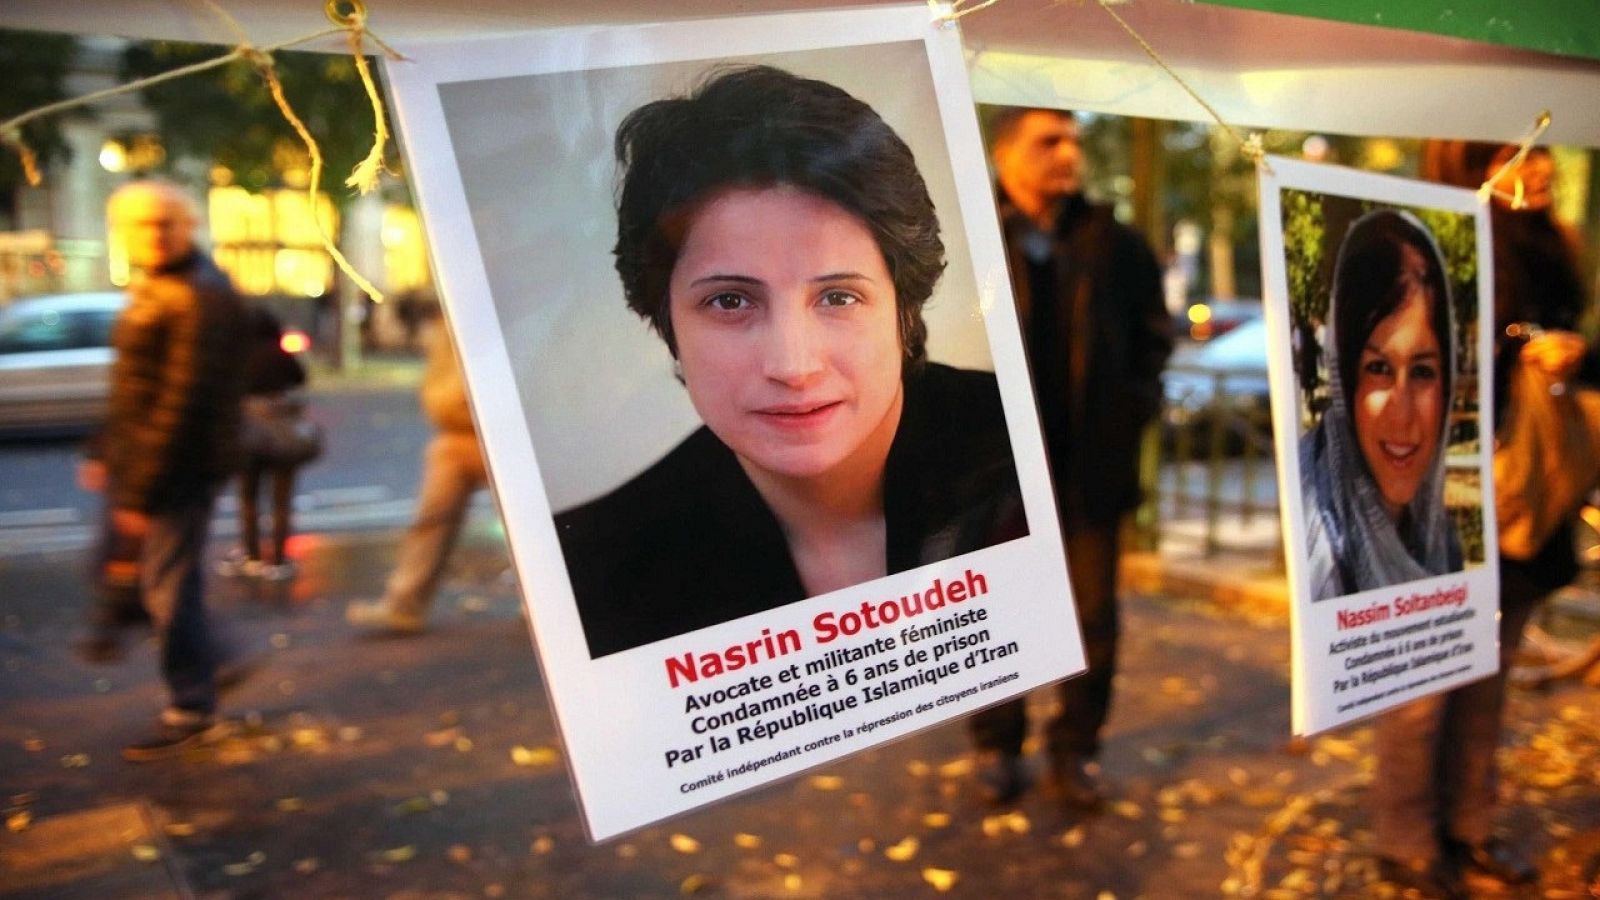 Cartel de recogida de firmas para liberar a Nasrin Sotoudeh